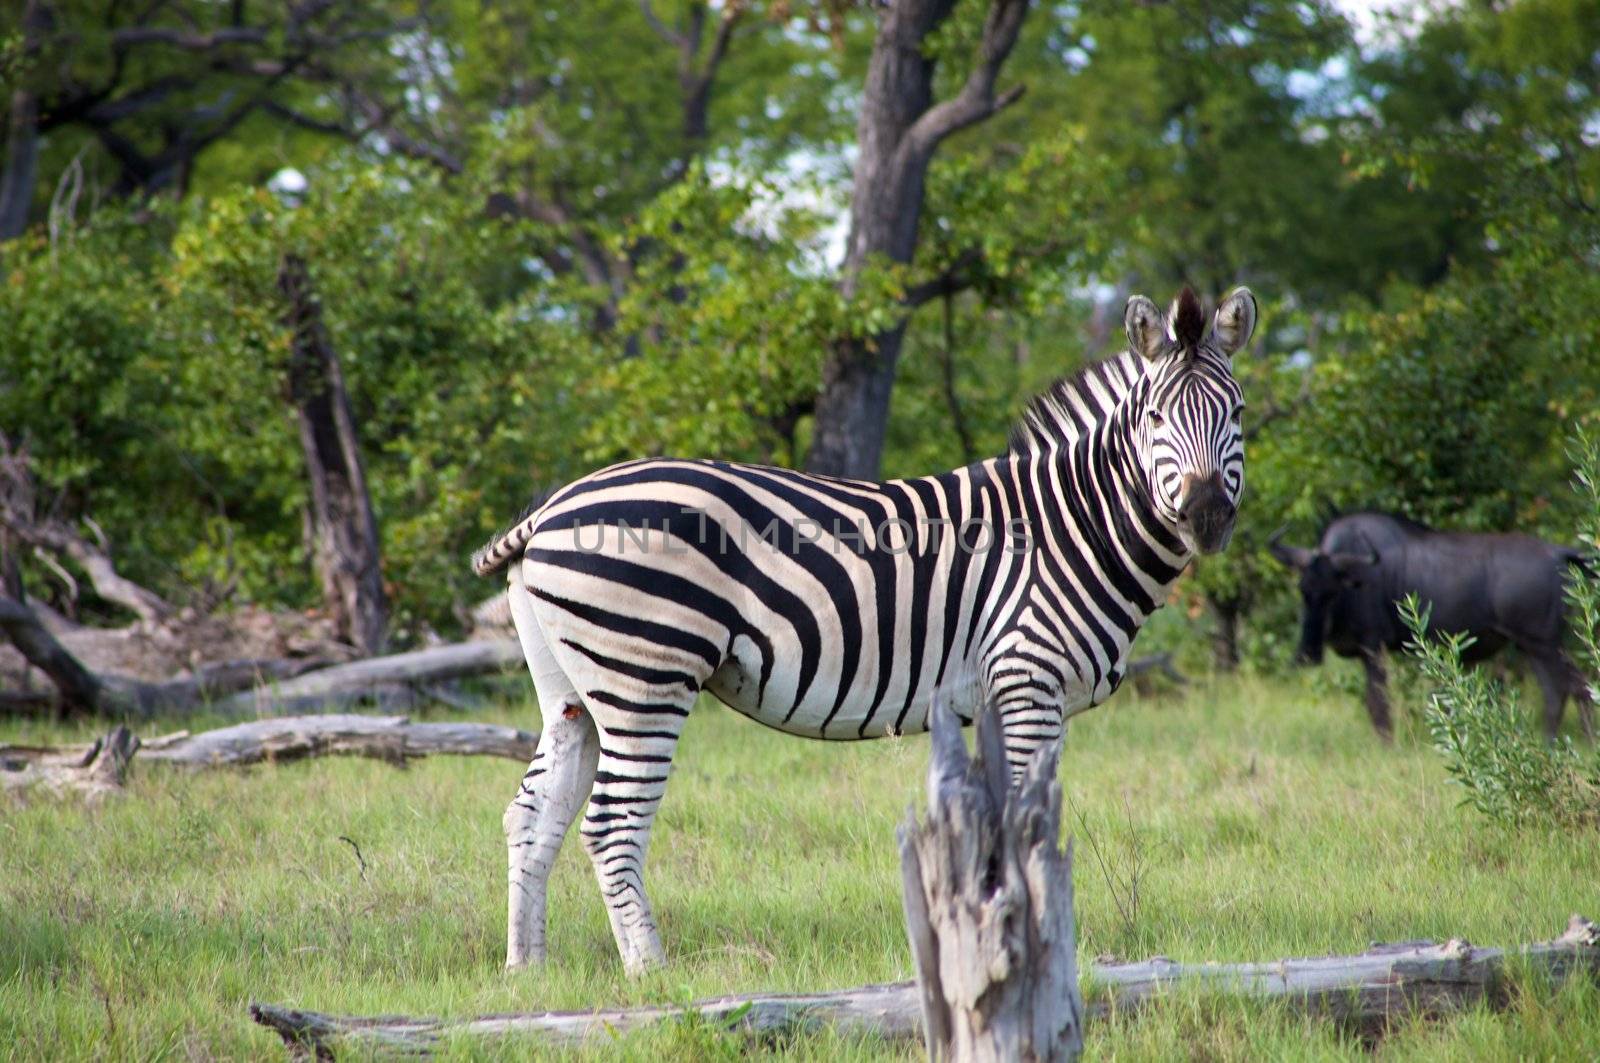 Zebra in Botswana by watchtheworld